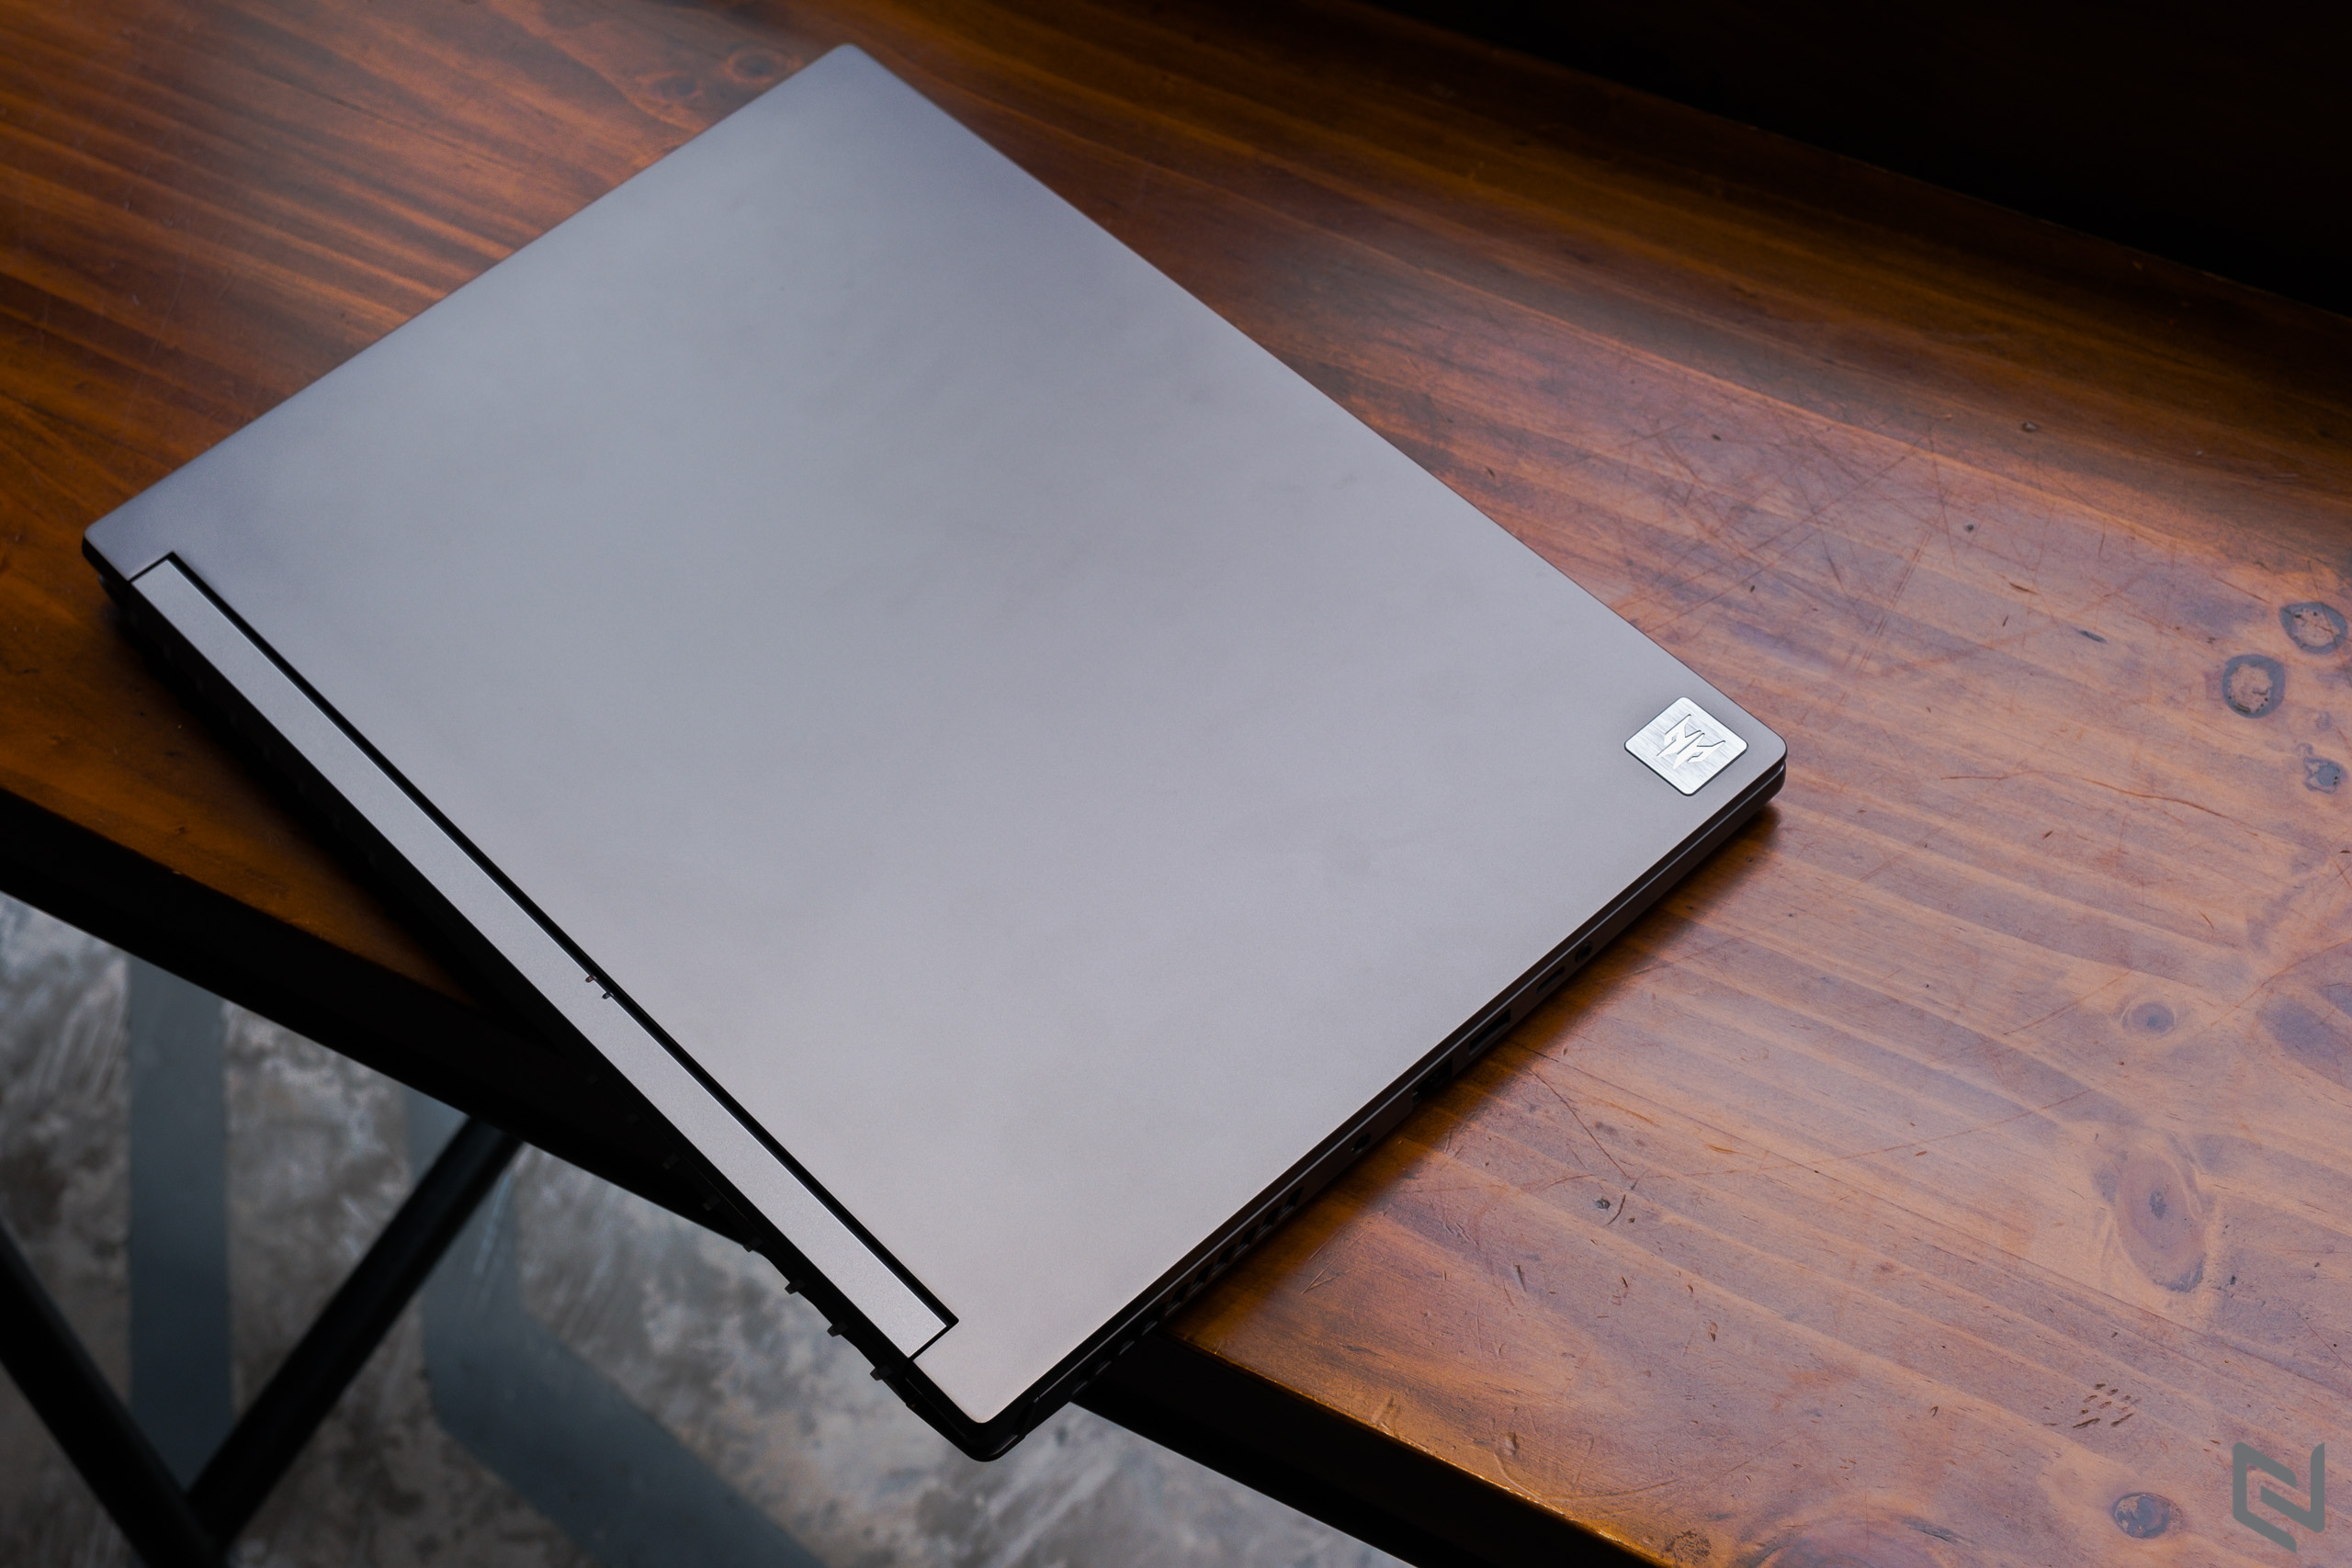 Acer giới thiệu laptop gaming mỏng nhẹ hiệu năng khủng Predator Triton 500 SE tại Việt Nam, giá từ 60 triệu